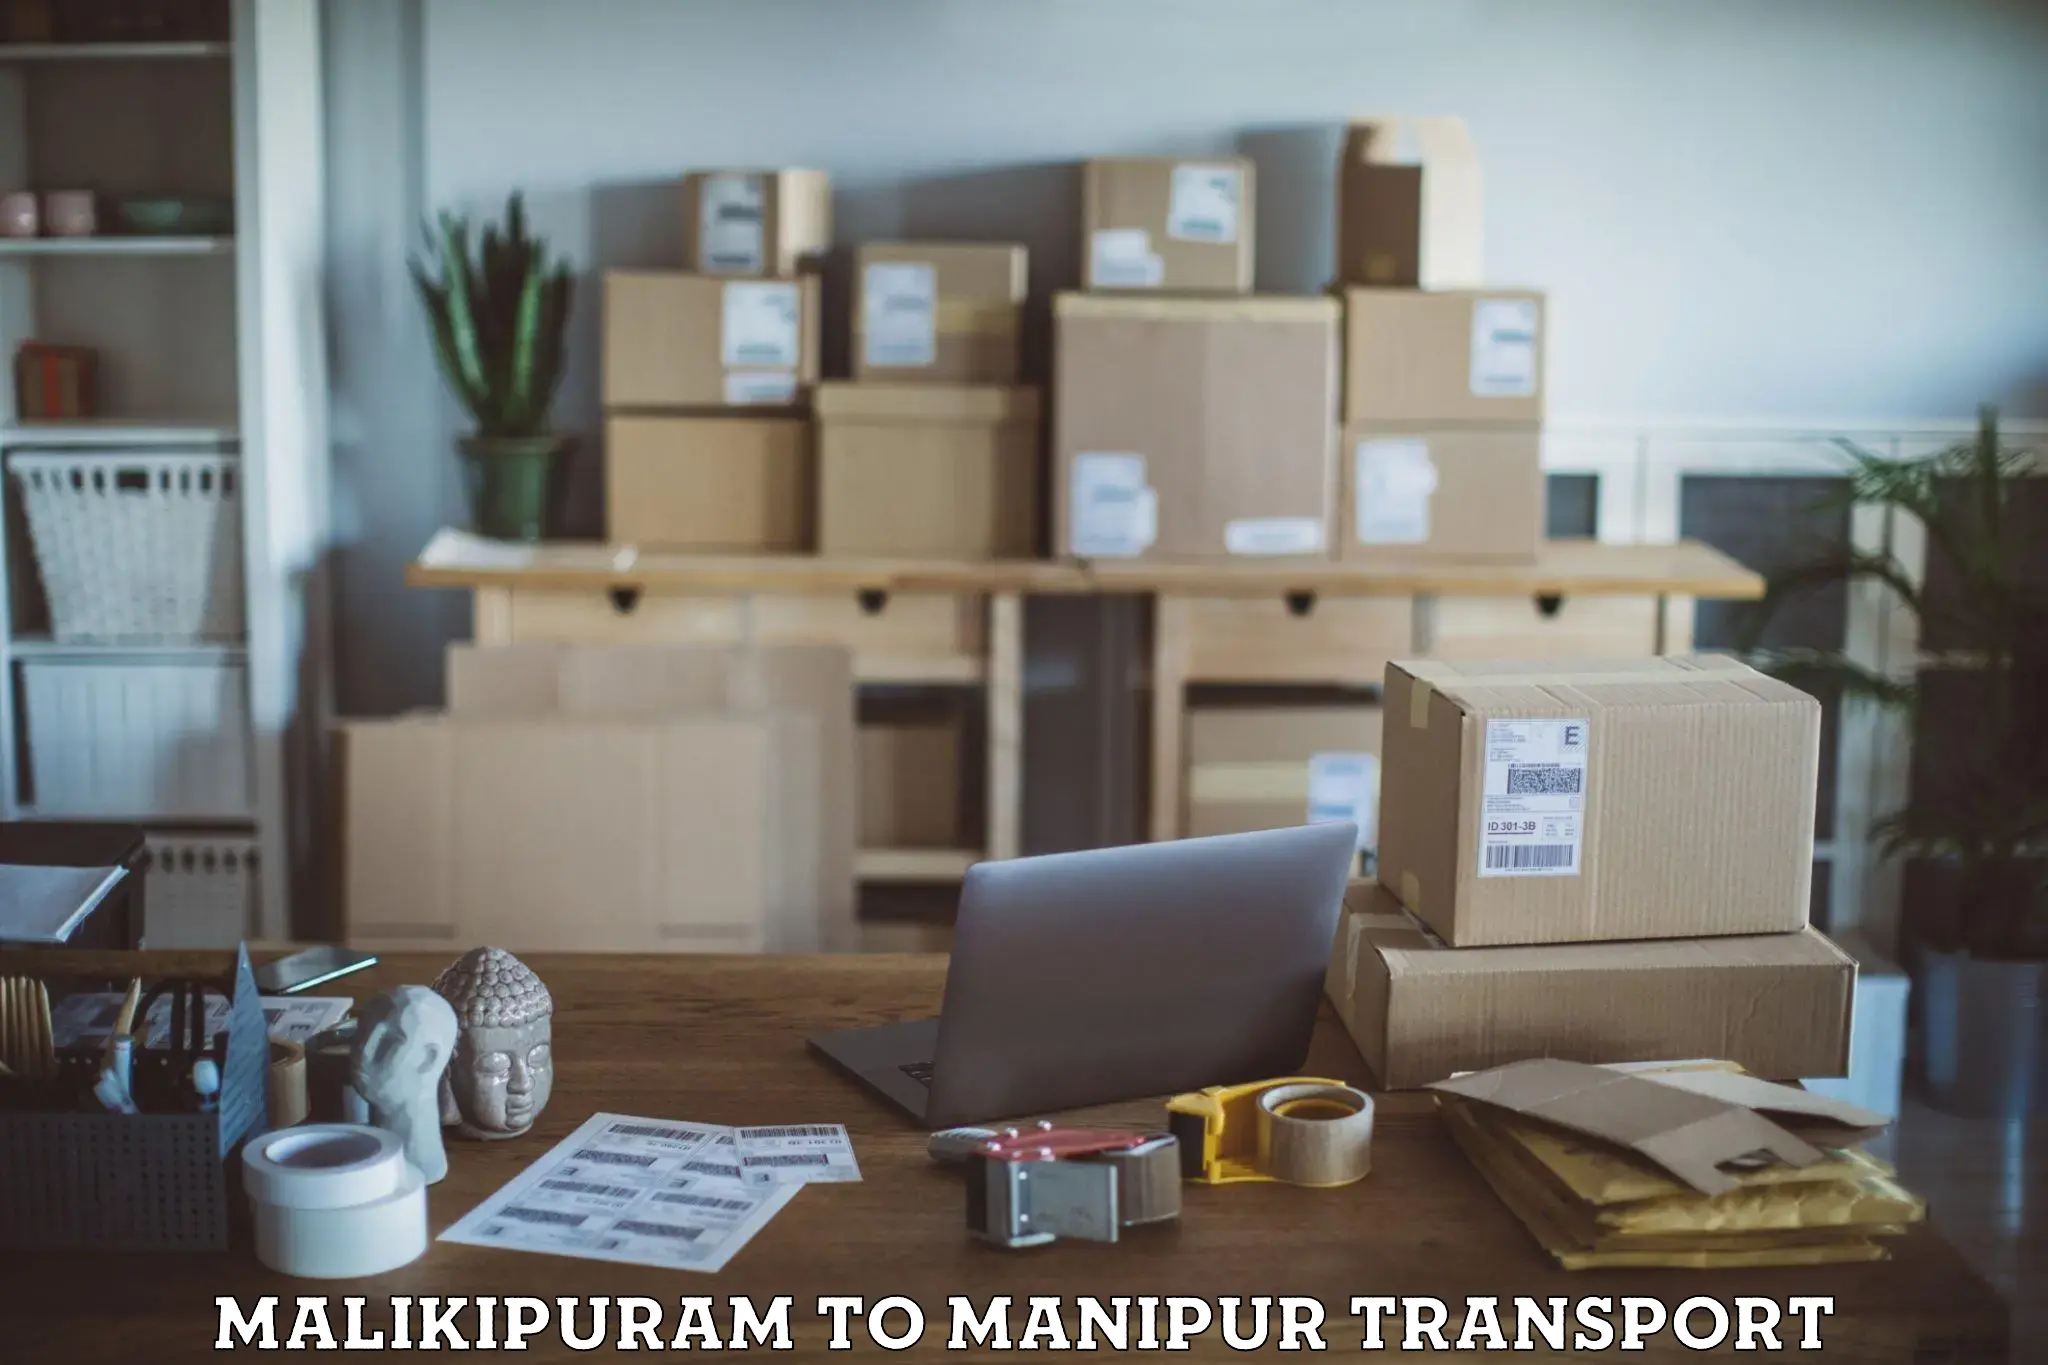 Container transport service Malikipuram to Kanti